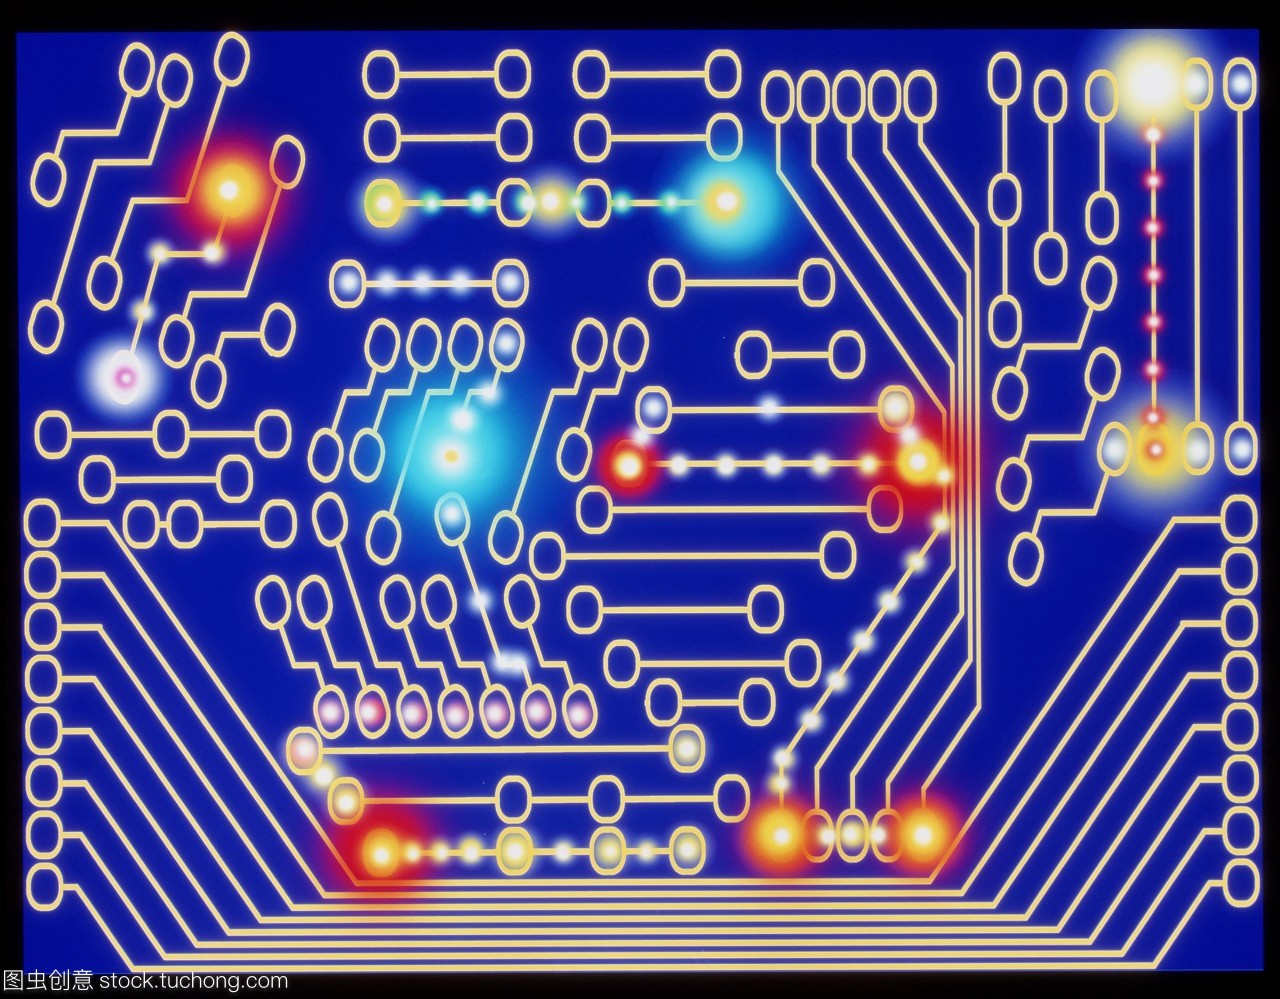 电路板。电脑绘图代表一个电路板。电路板用于提供个人电子元件之间的连接如晶体管和微芯片。